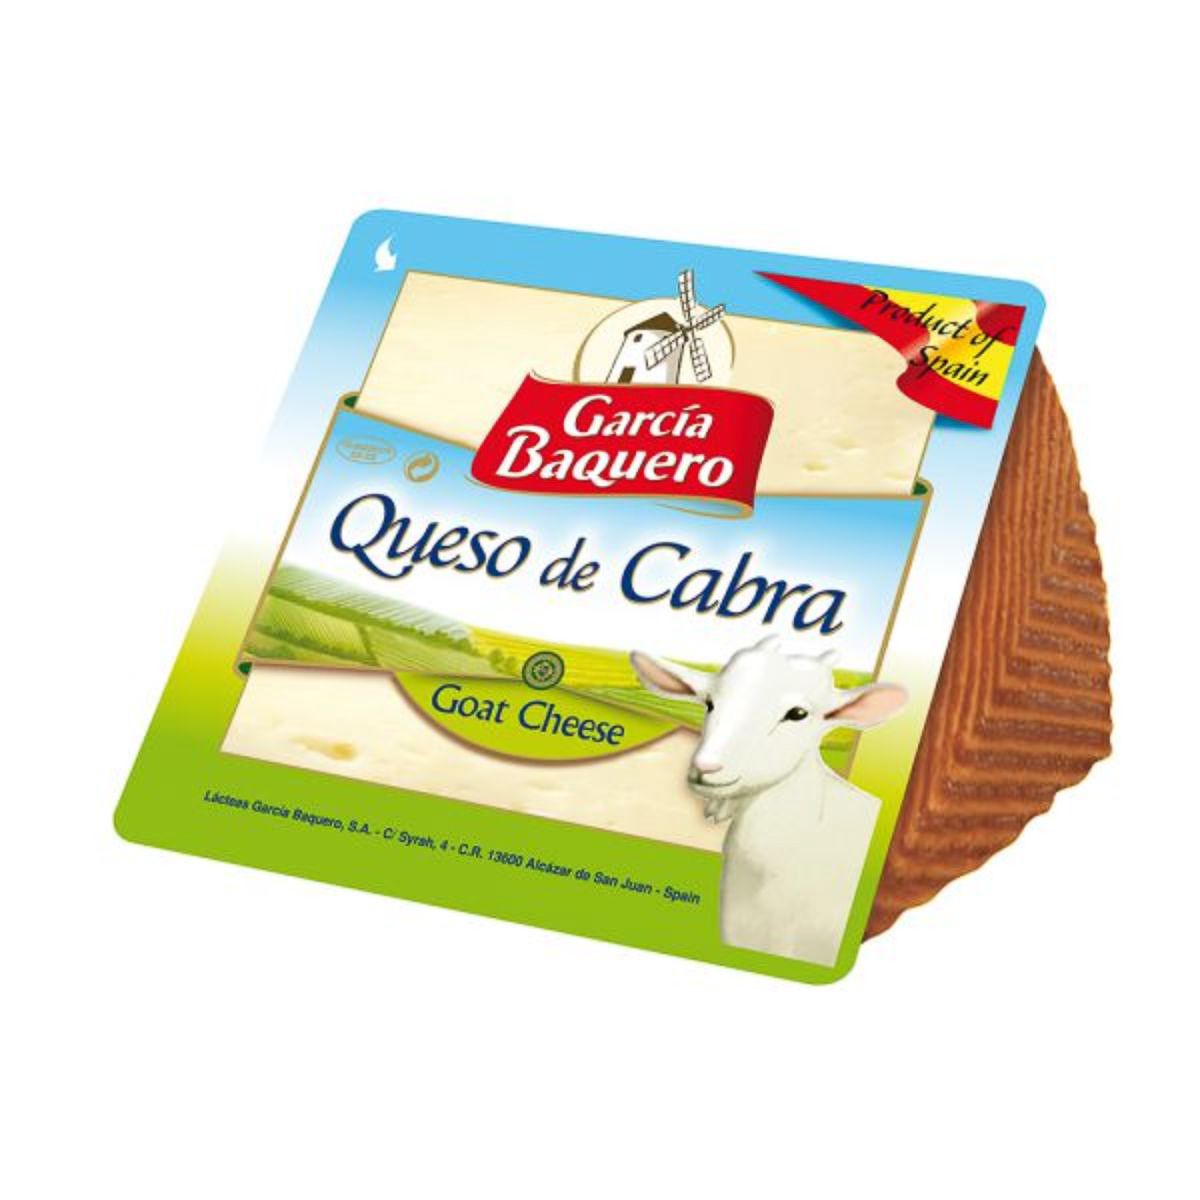 Garcia Baquero Goat cheese 150g